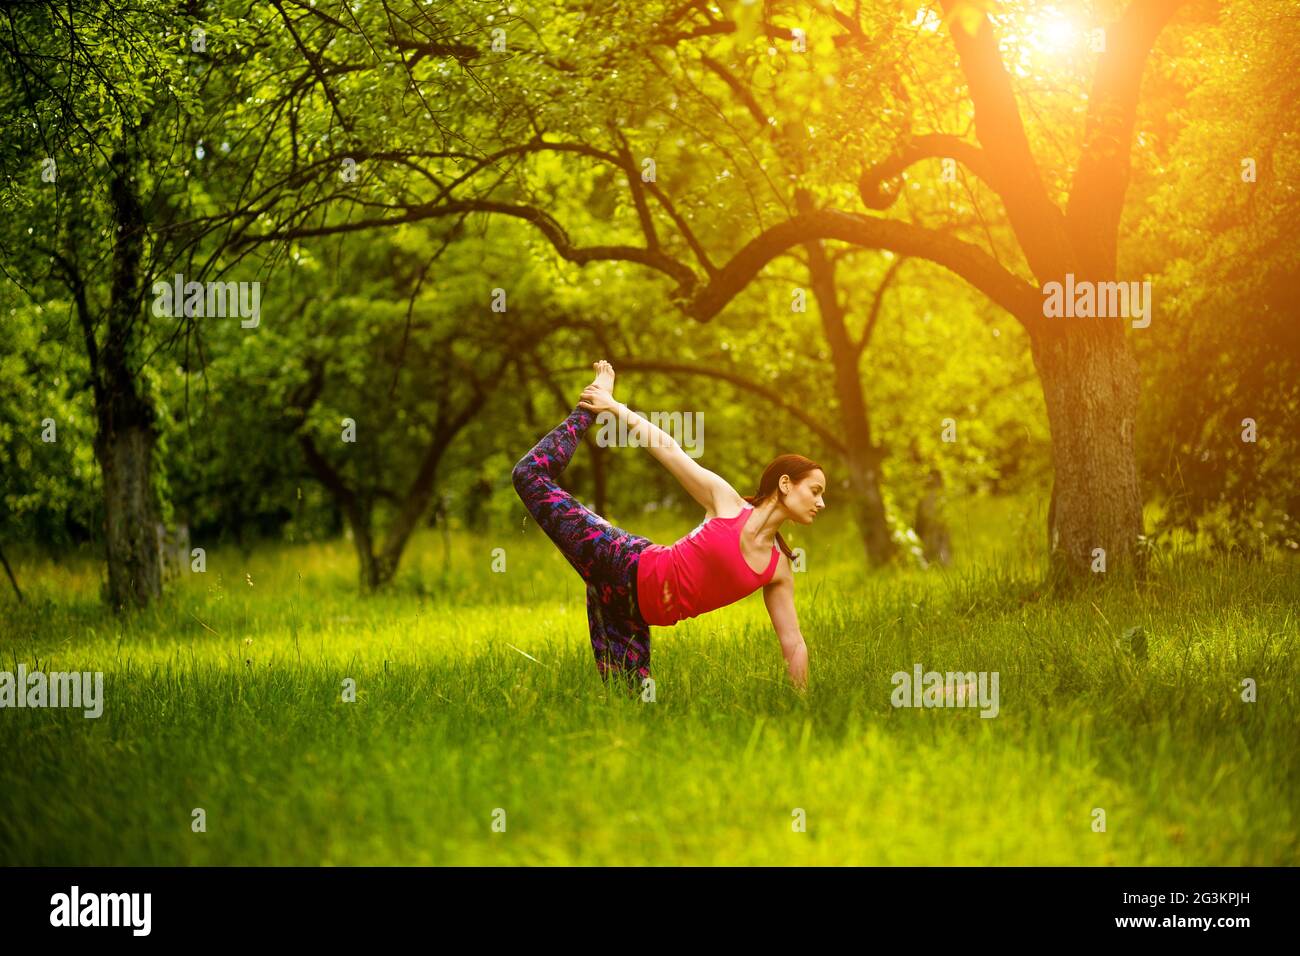 La pratica dello Yoga asana in natura. Foto Stock